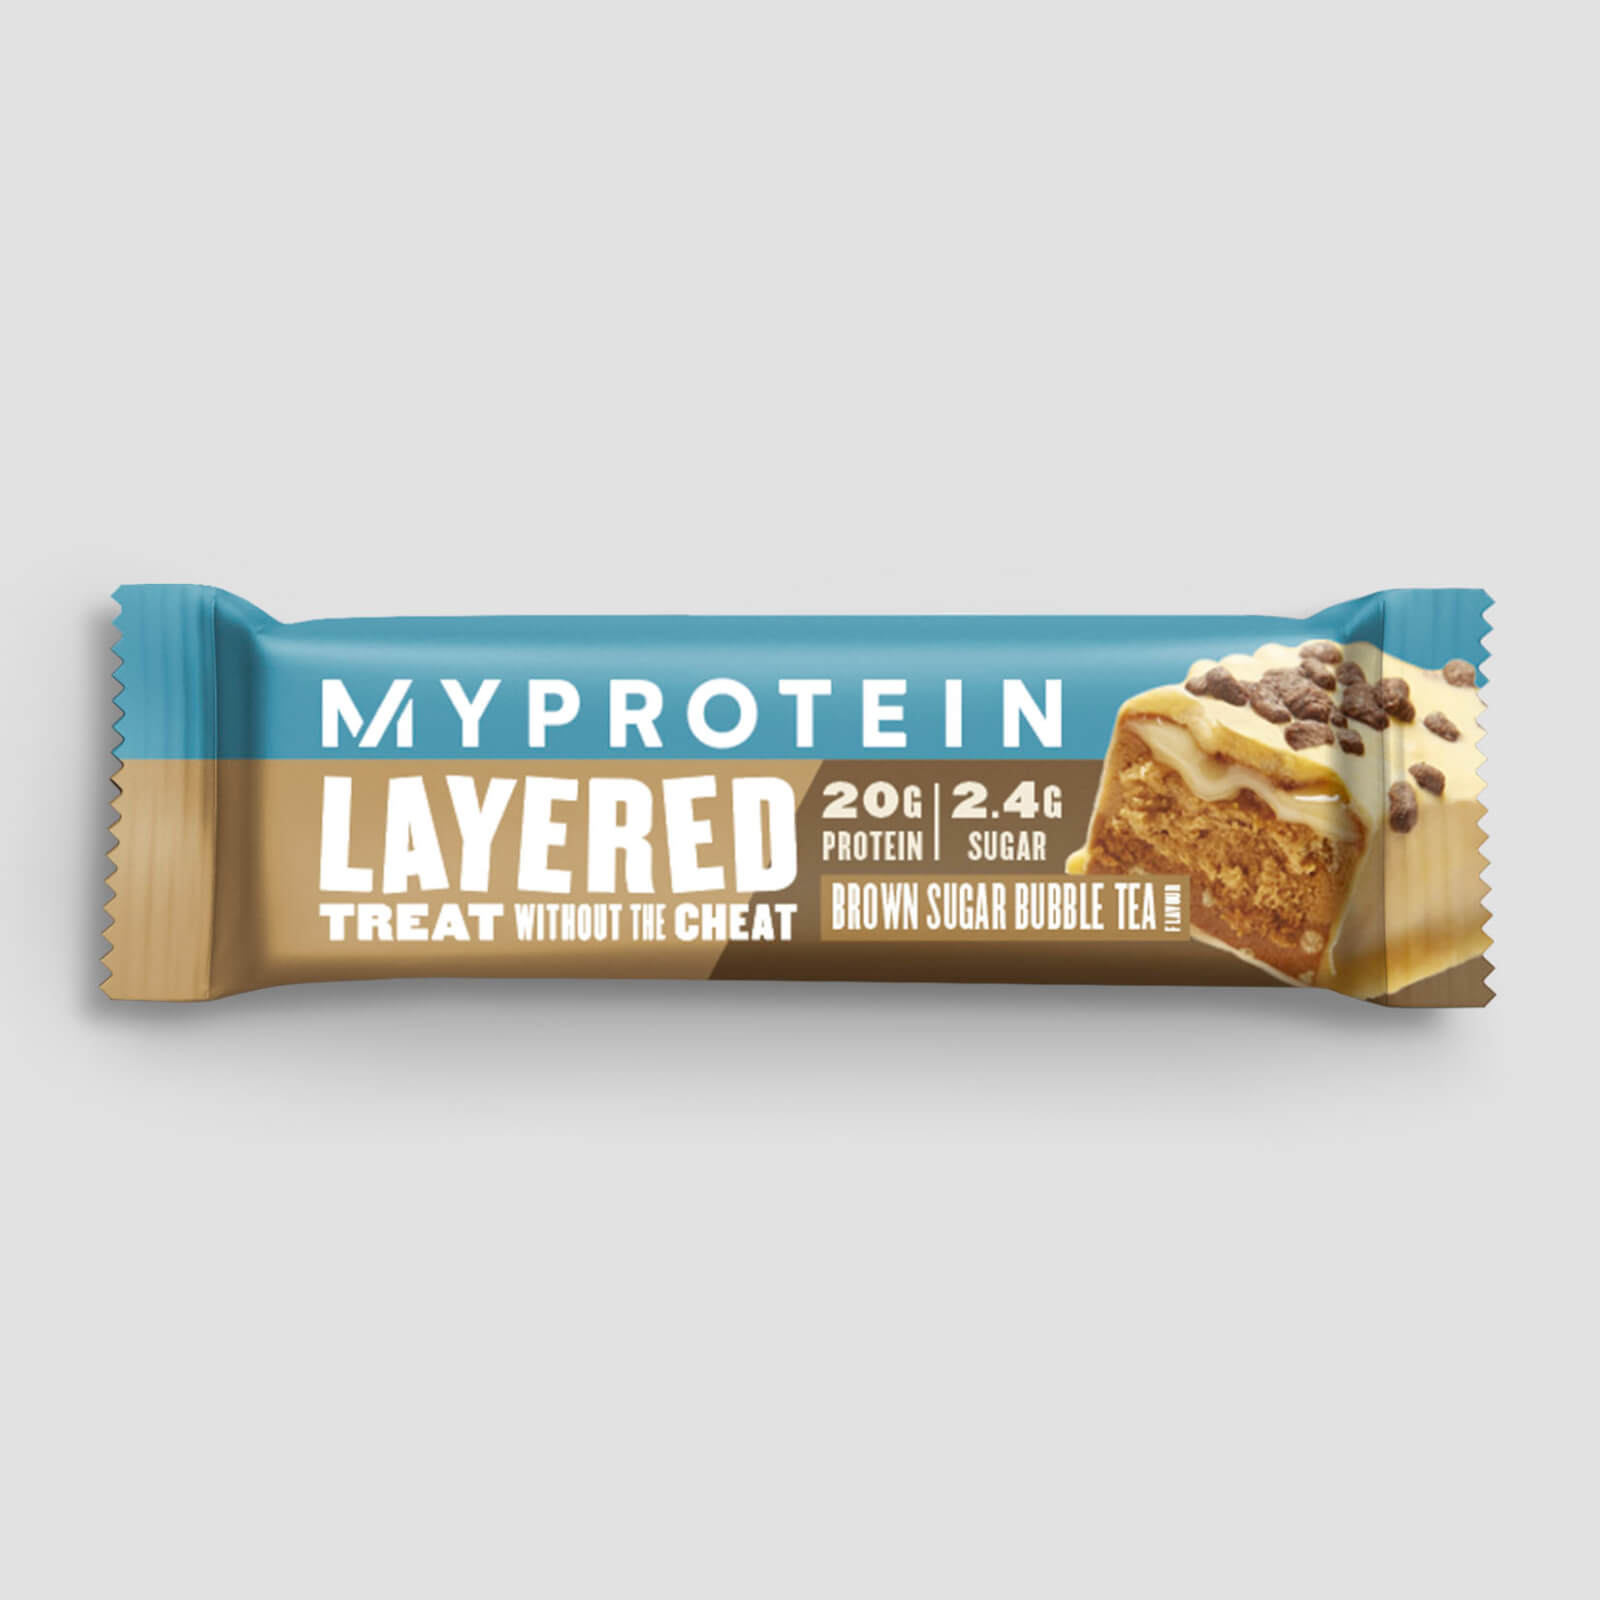 Myprotein Layered protein bar (sample) - brown sugar